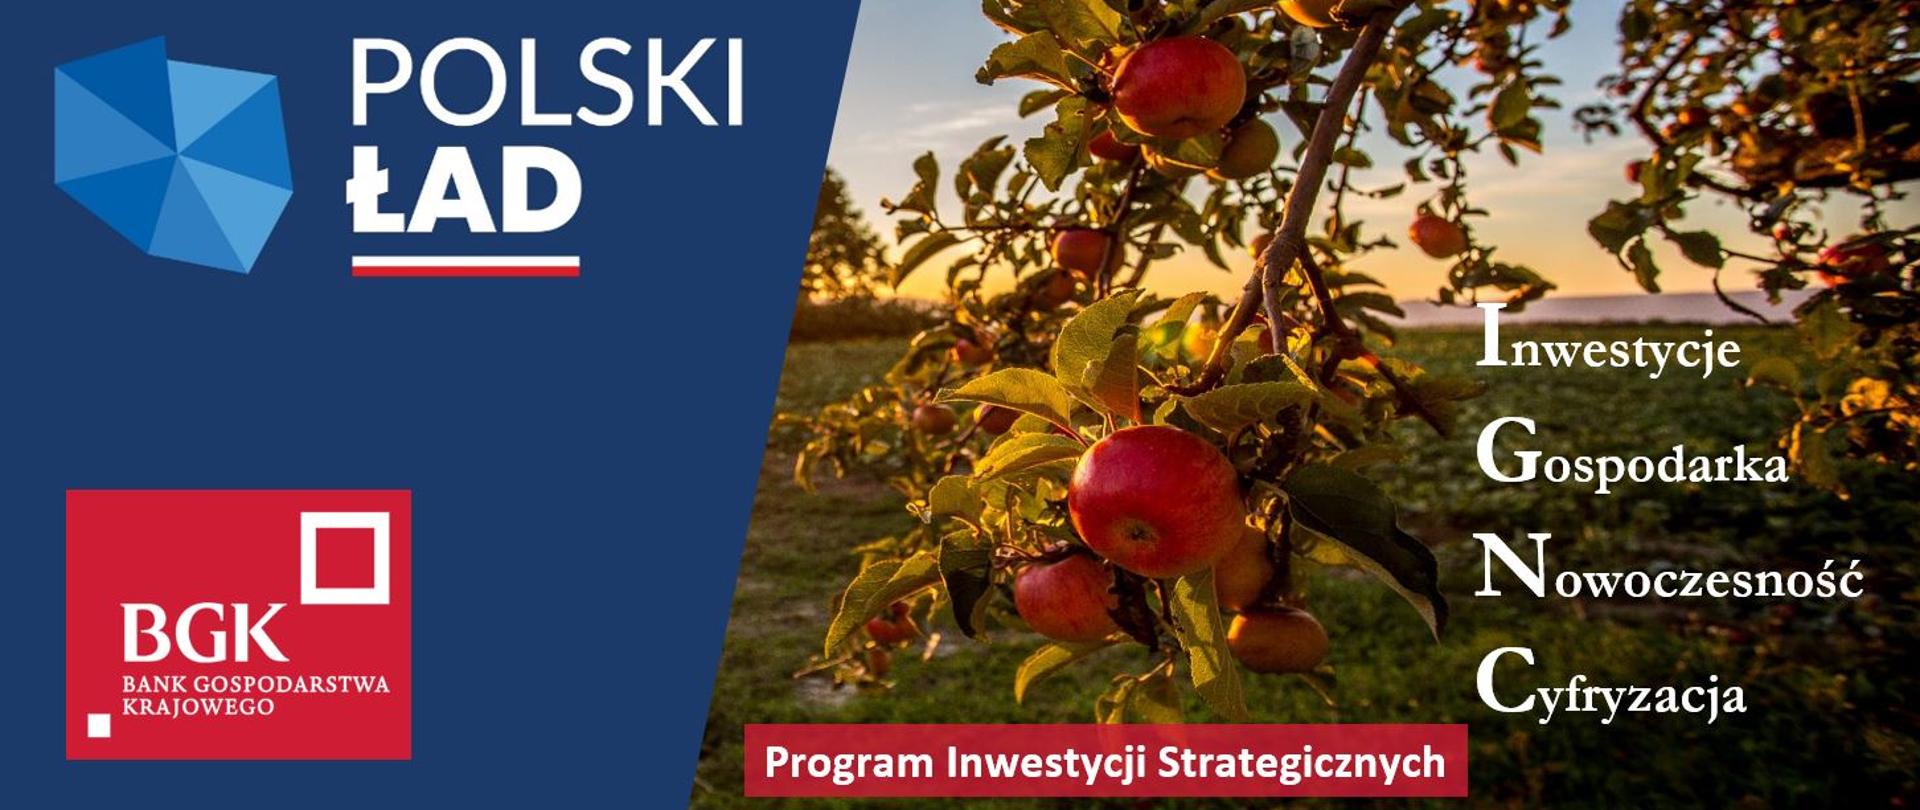 Na zdjęciu grafika - po lewej stronie widać sad pełen jabłek i jedną z gałęzi. Oraz napisy: inwestycje, gospodarka, nowoczesność, cyfryzacja. Po lewej stronie niebieski blok z logo Polskiego ładu i logo BGK.